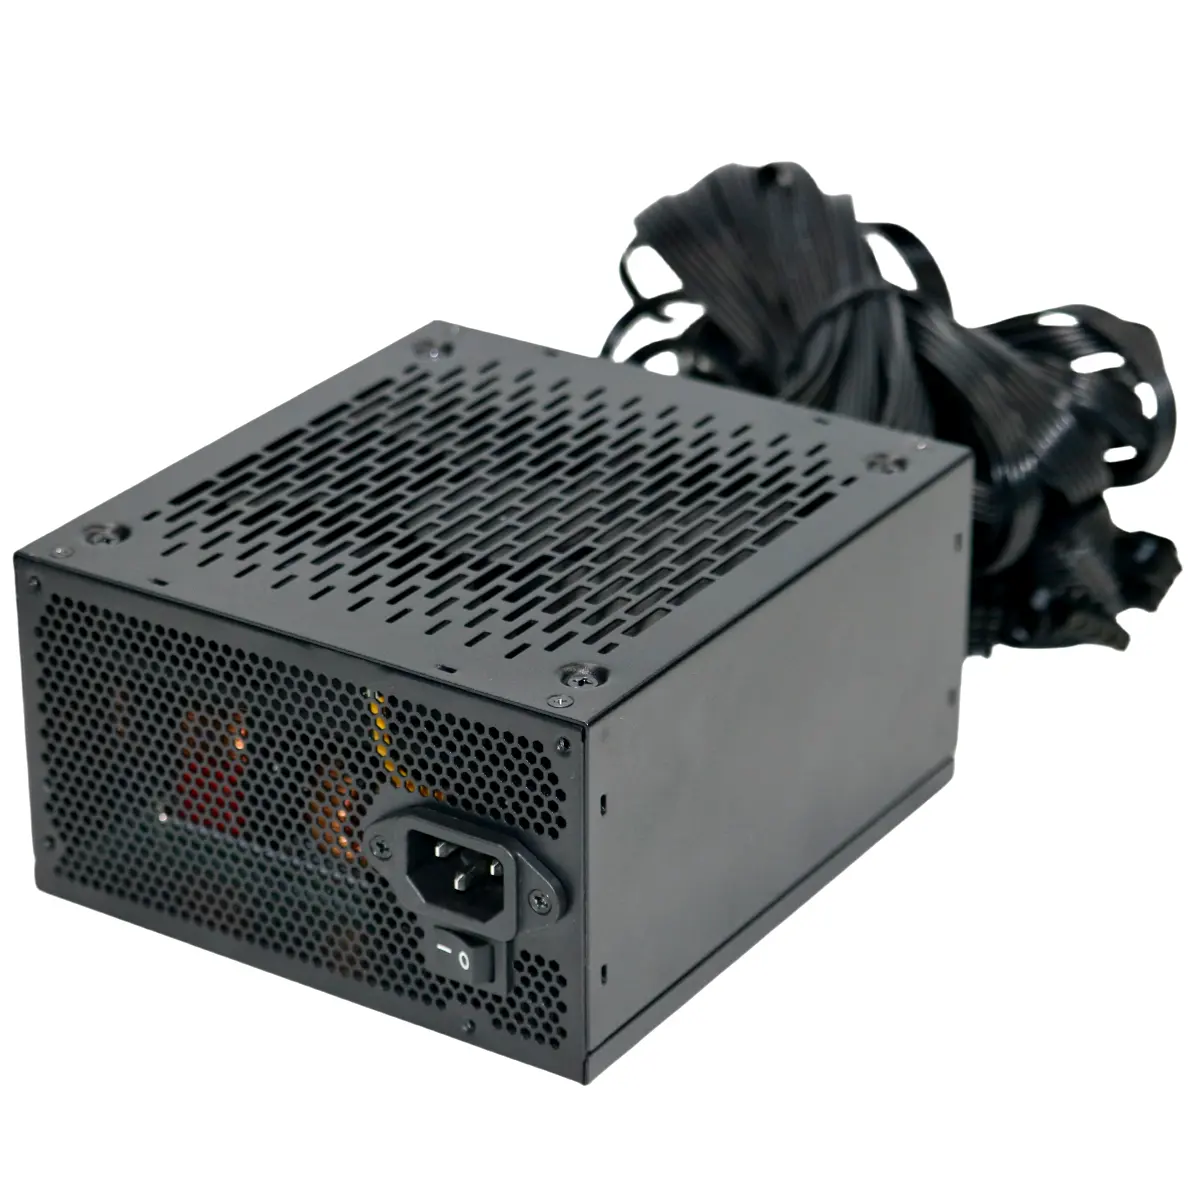 Yüksek kalite 850W Pcie5.0 altın 80 artı bilgisayar güç kaynağı ünitesi (PSU) sunucu ve masaüstü uygulamaları için PC için